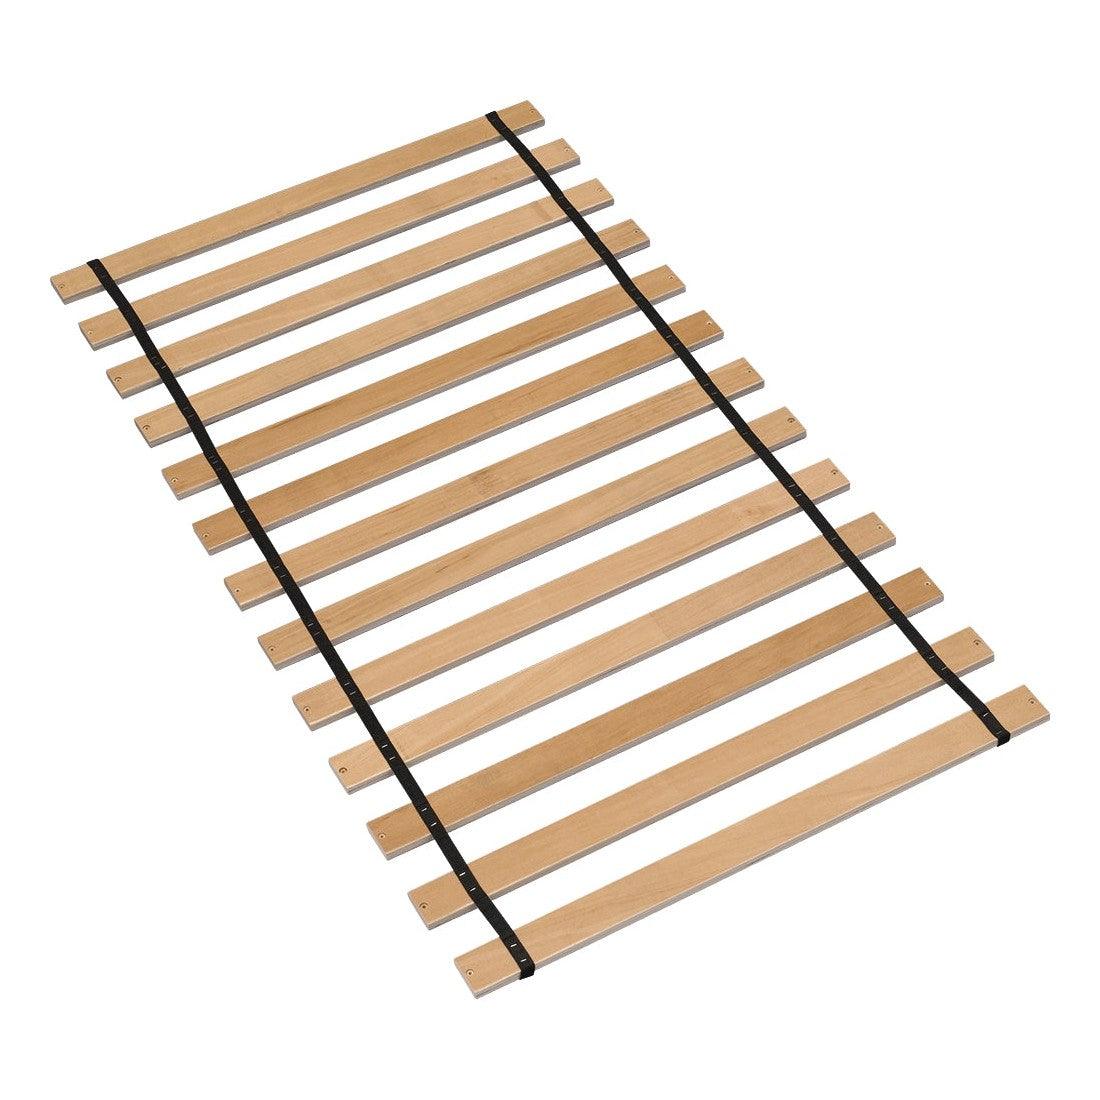 Frames and Rails Roll Slat Ash-B100-11